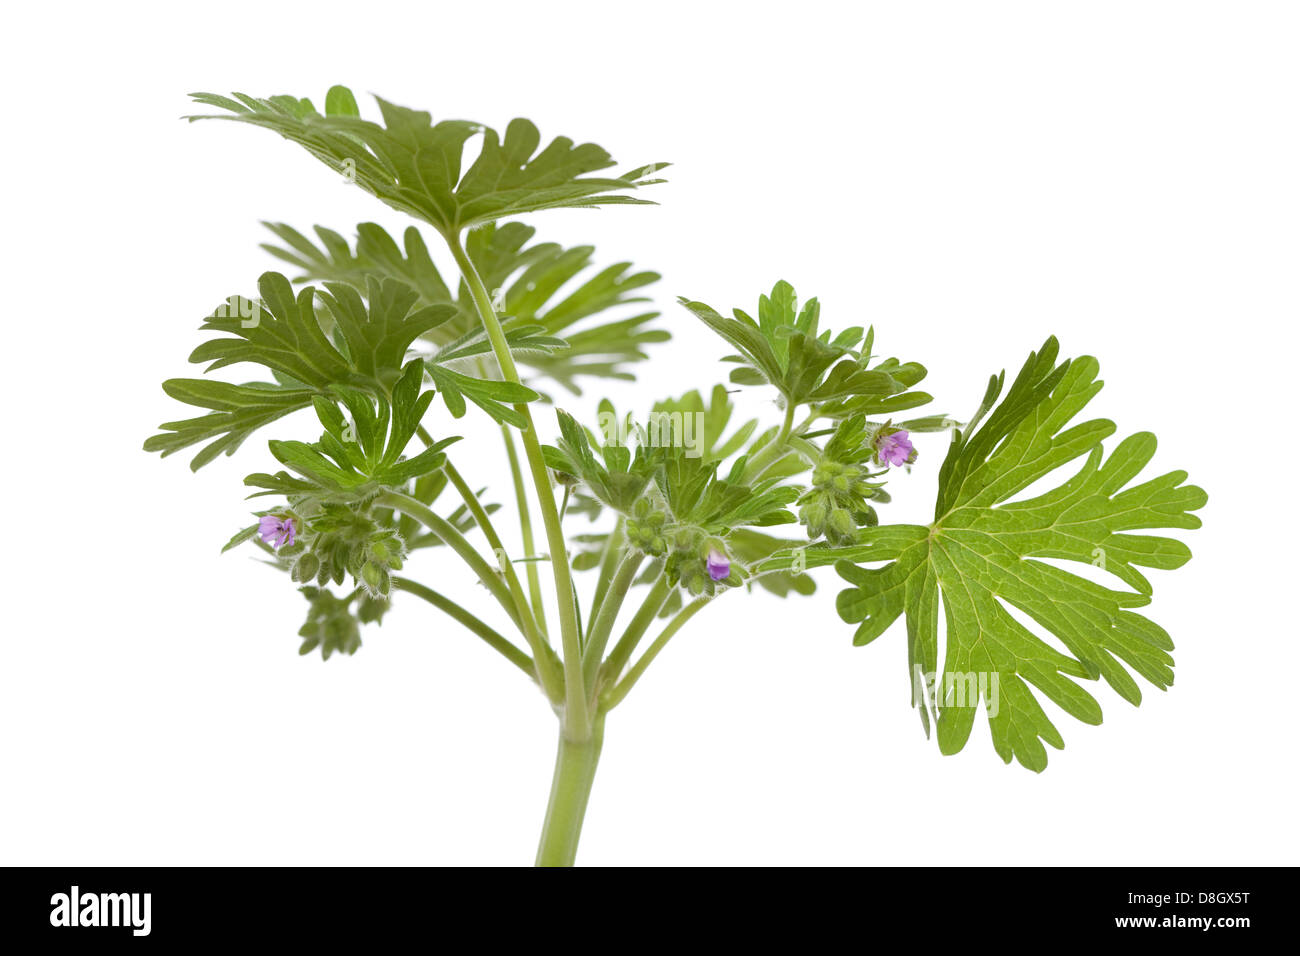 little geranium (Geranium pusillum) on white background Stock Photo